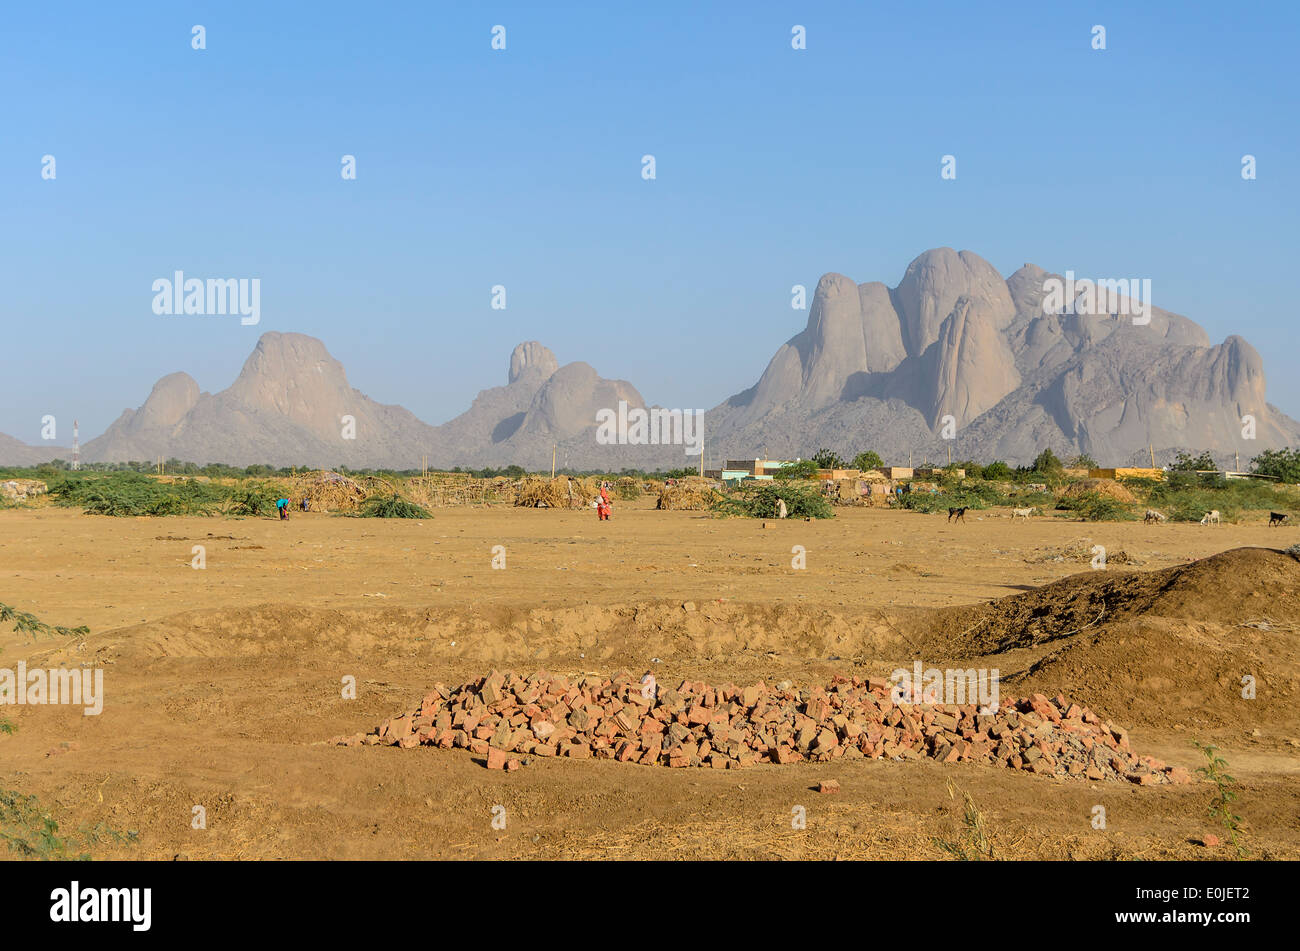 Kassala mounains in Sudan Stock Photo